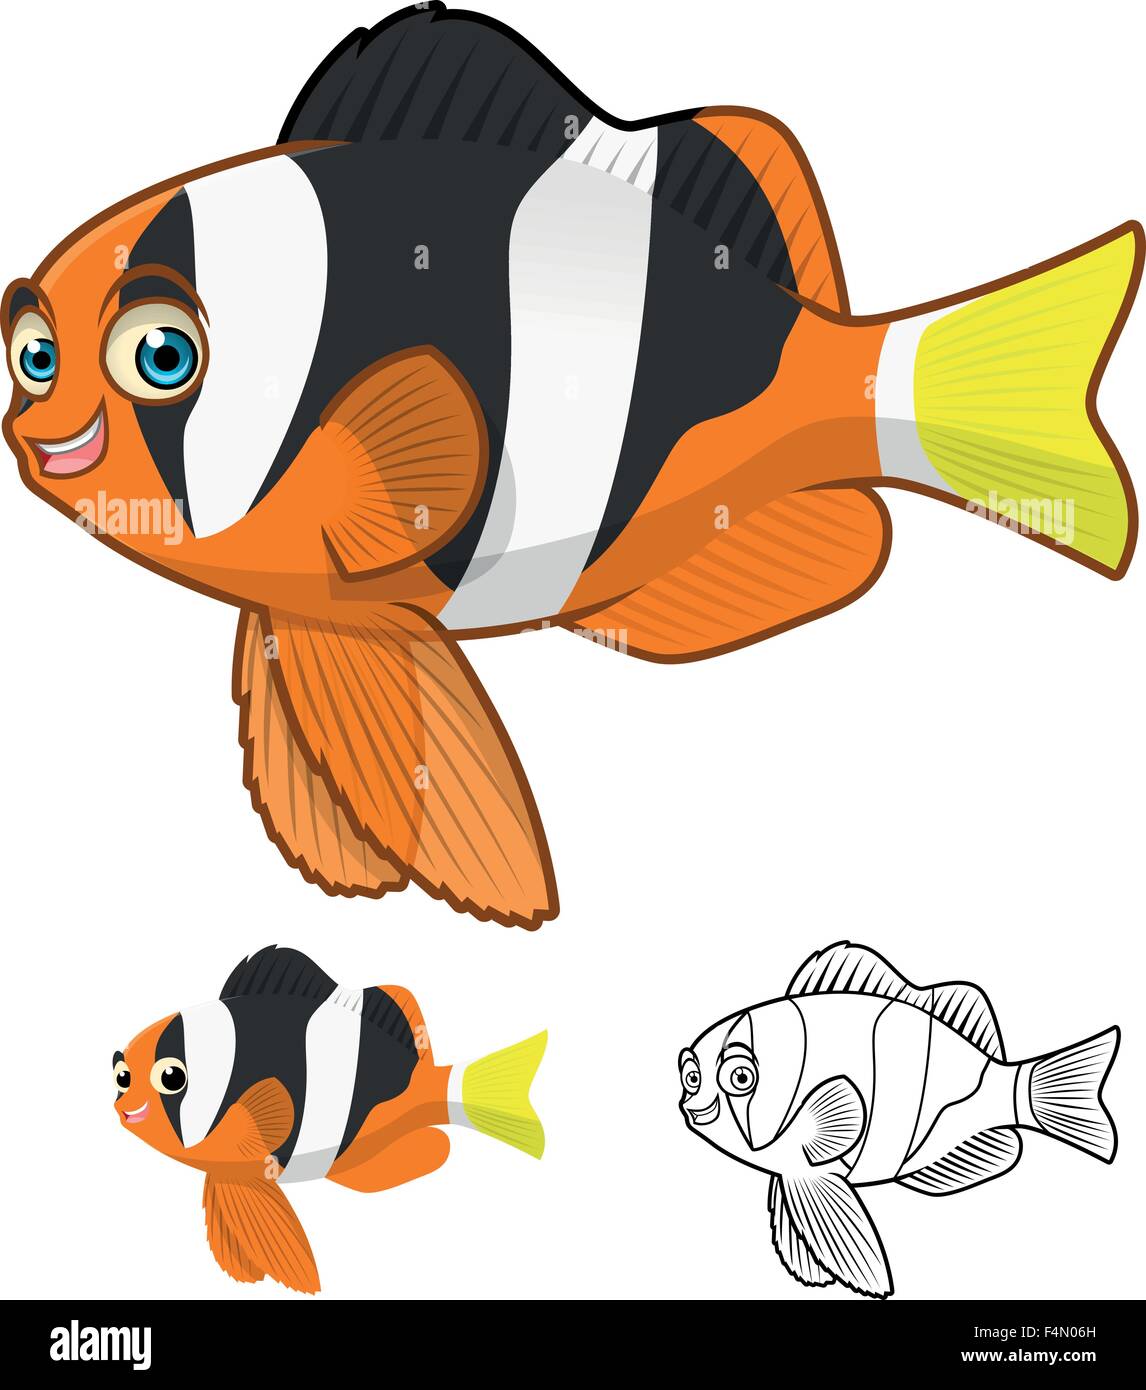 Alta qualità Limanda Clownfish personaggio dei fumetti includono design piatto e Line Art versione Illustrazione Vettoriale